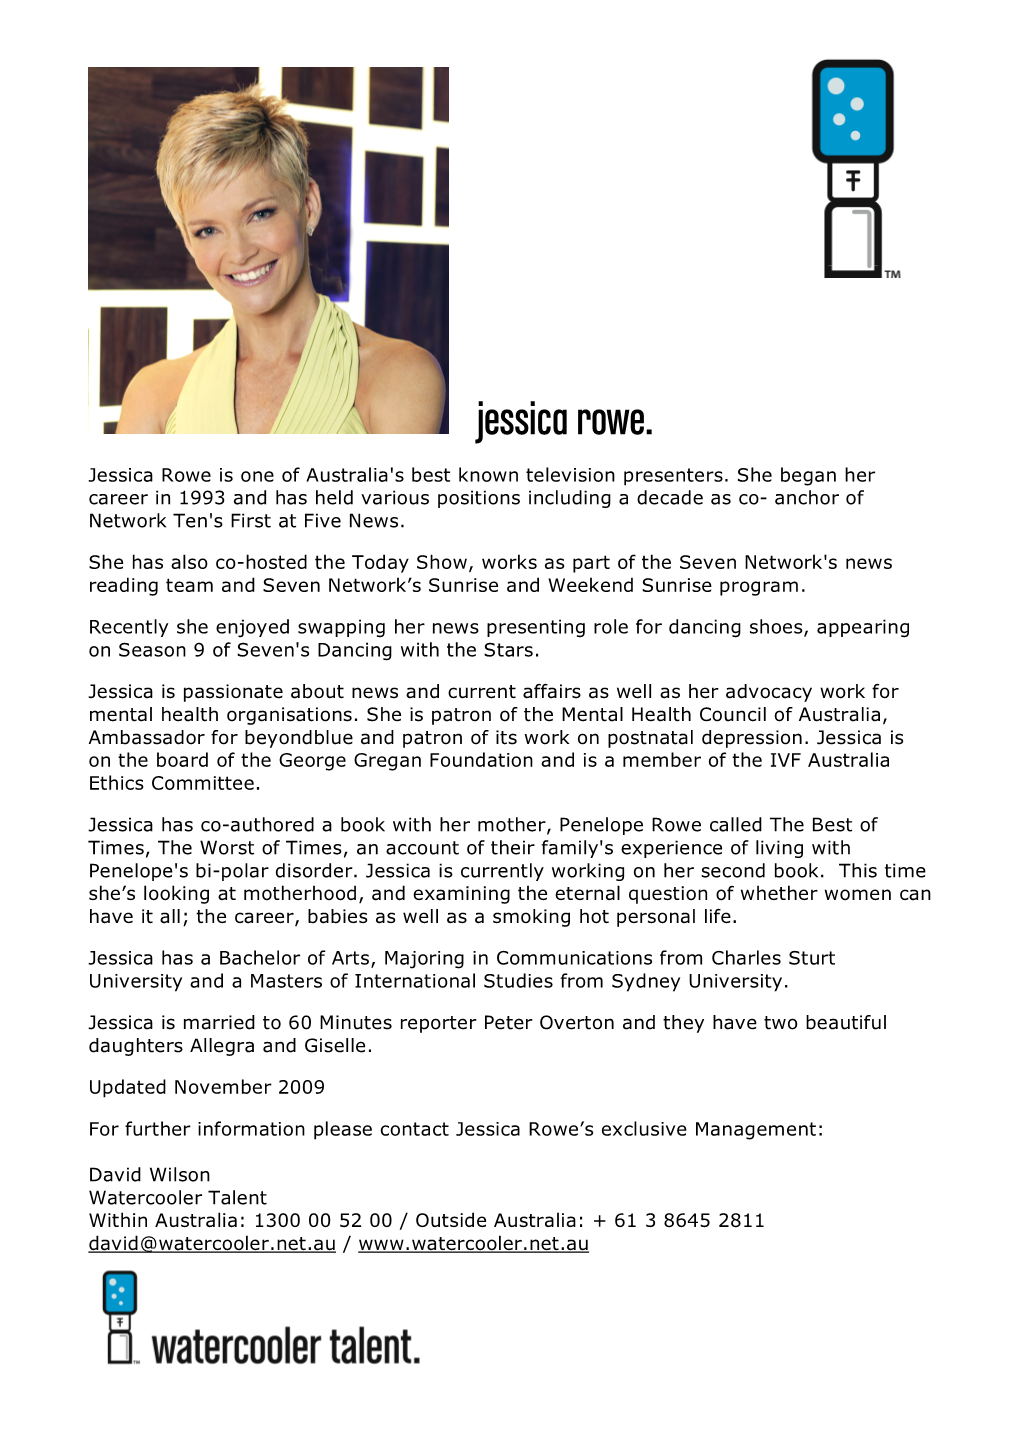 Jessica Rowe Bio November 2009